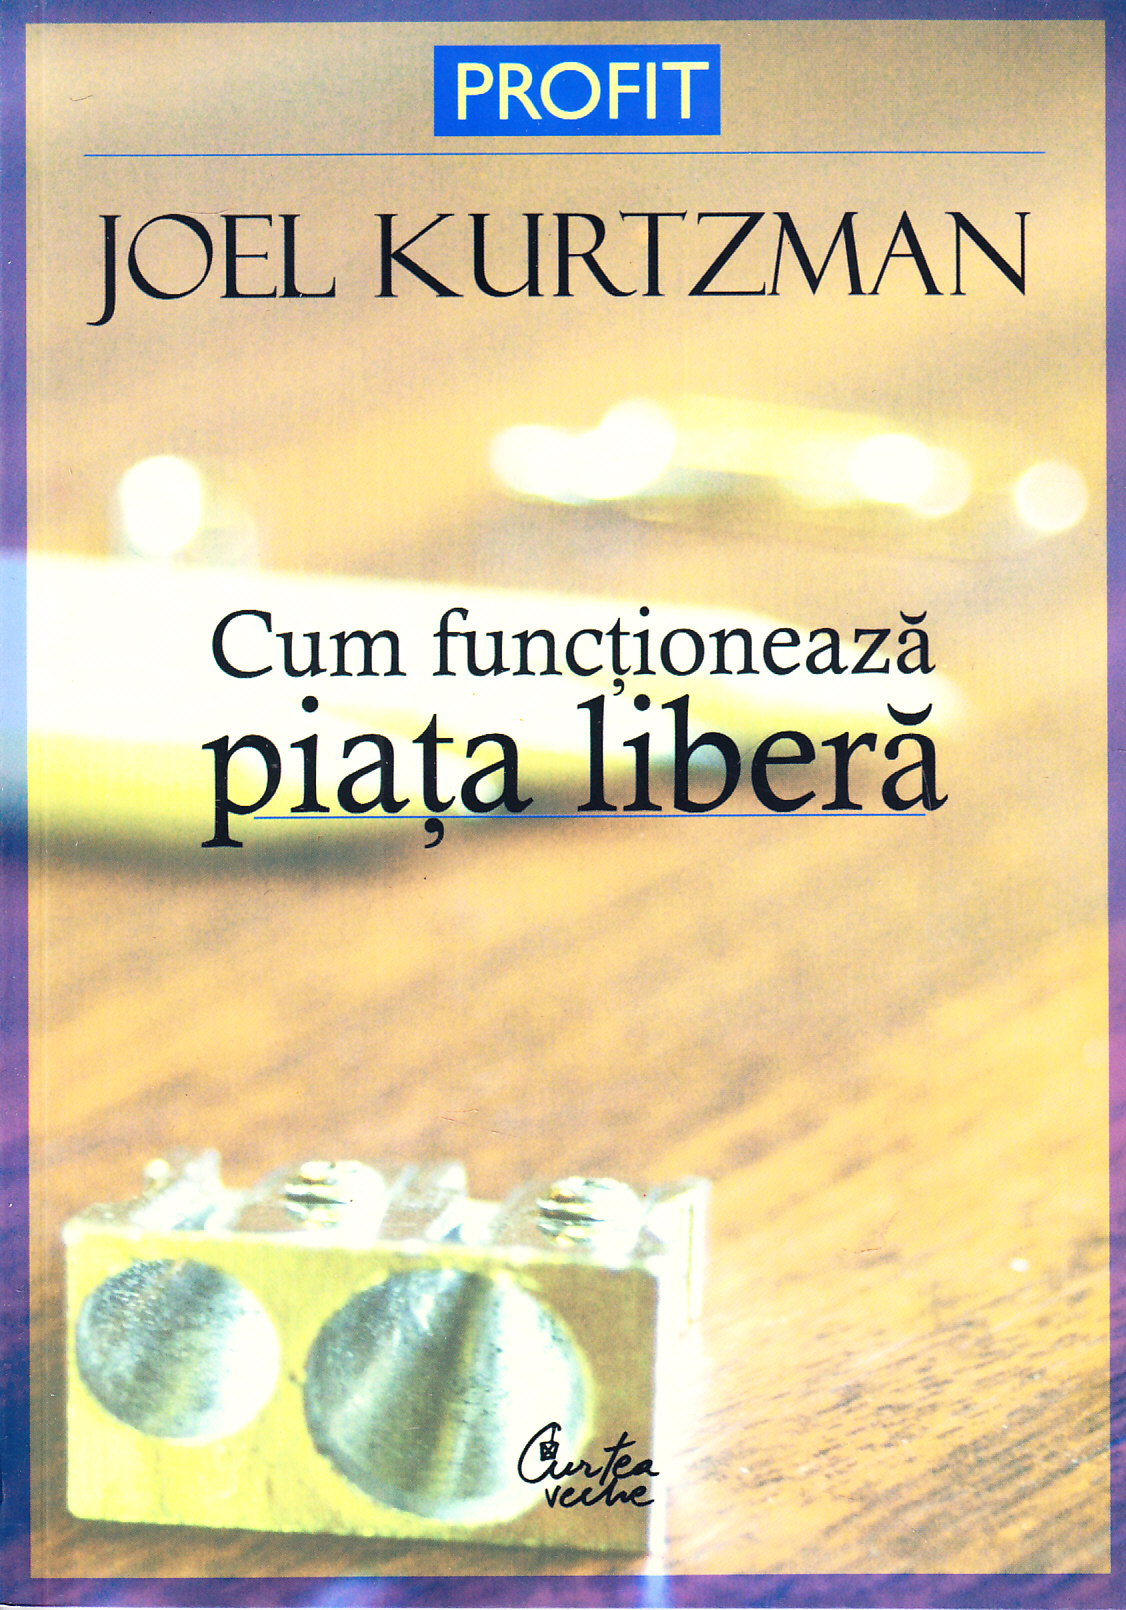 Cum functioneaza piata libera - Joel Kurtzman